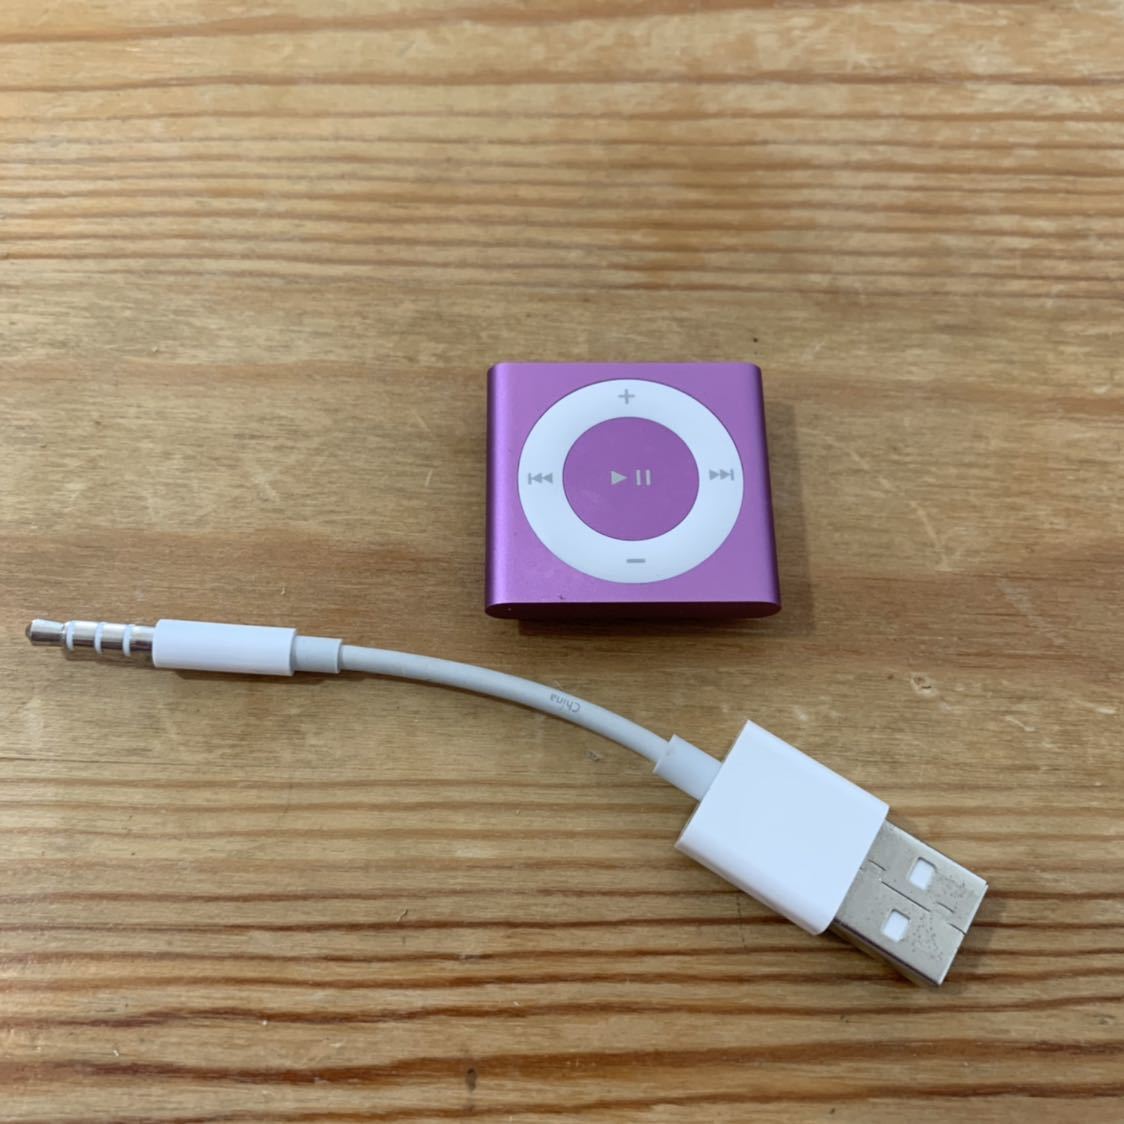 運費免費 Apple iPod shuffle 2GB 粉紅色 原文:送料無料 Apple iPod shuffle 2GB ピンク 